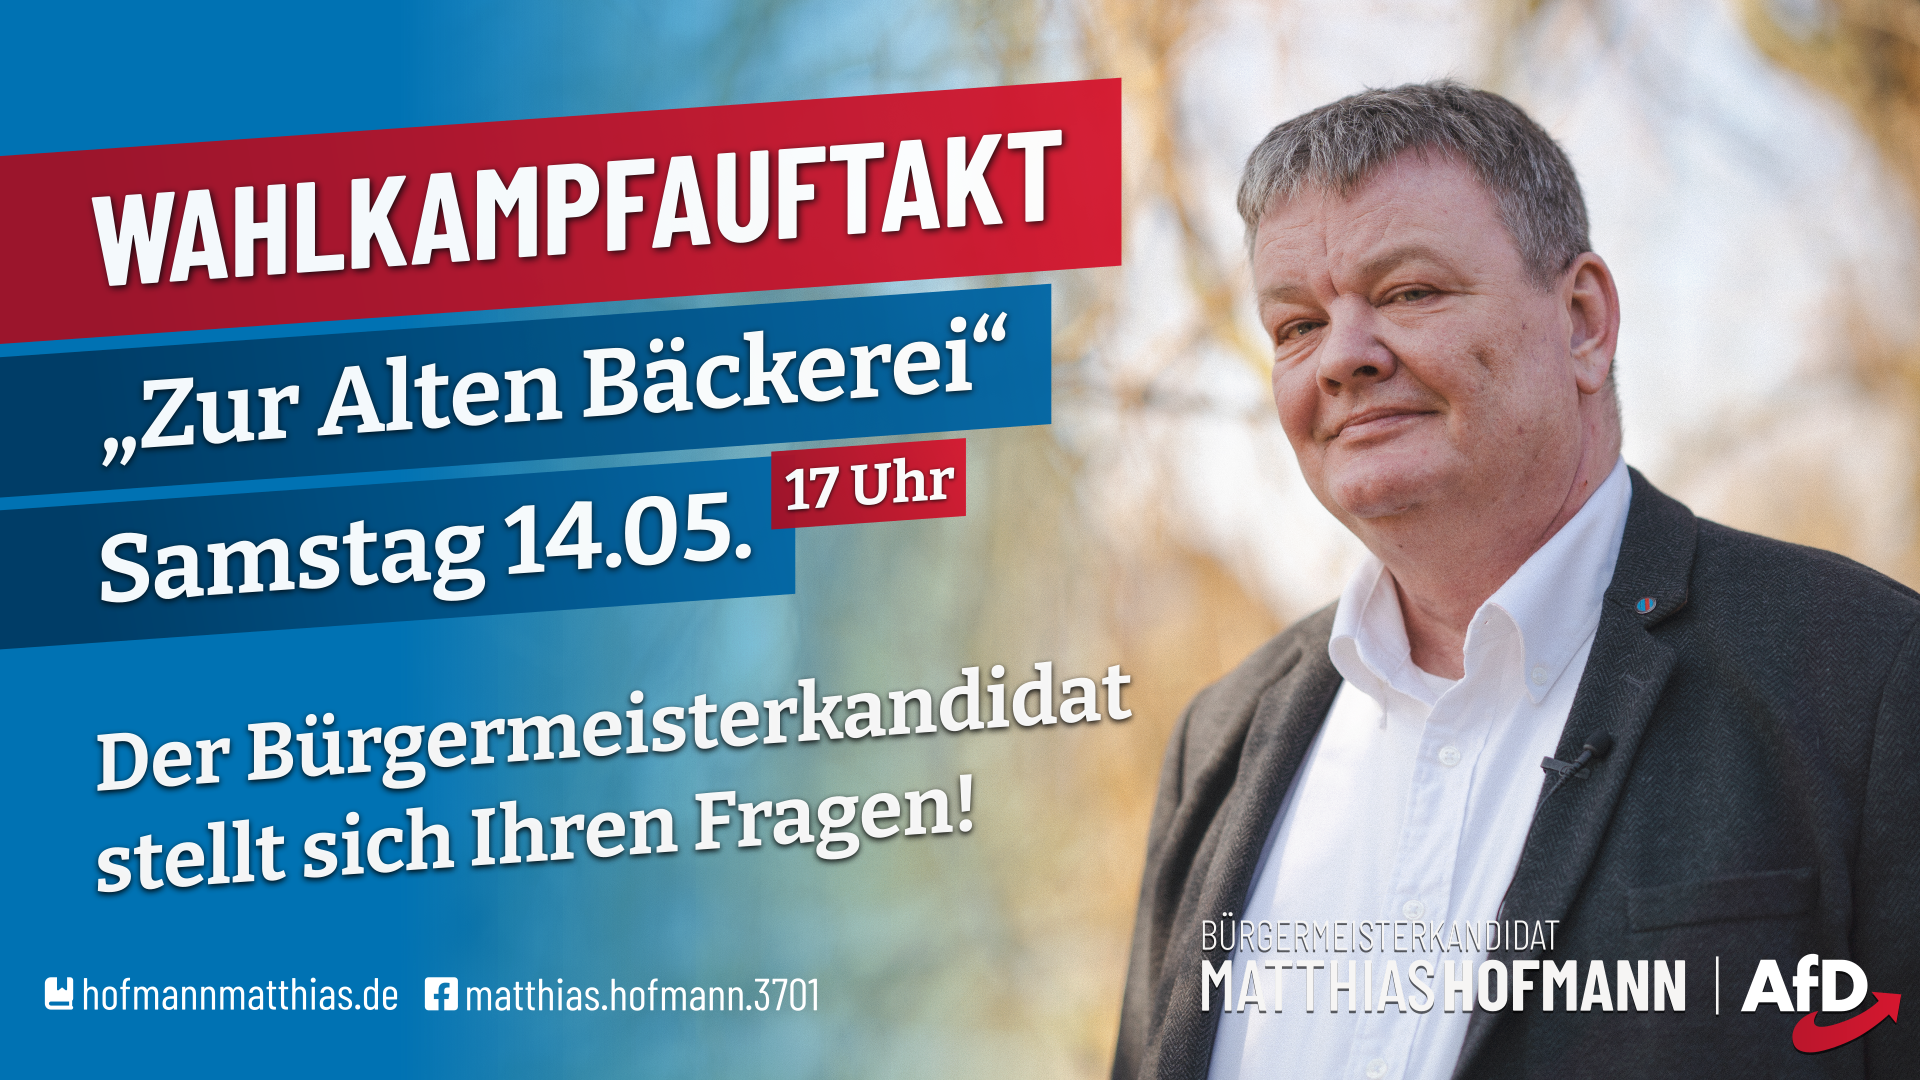 Der Bürgermeisterkandidat Matthias Hofmann stellt sich, am Samstag, den 14.05. ab 17 Uhr, Ihren Fragen.